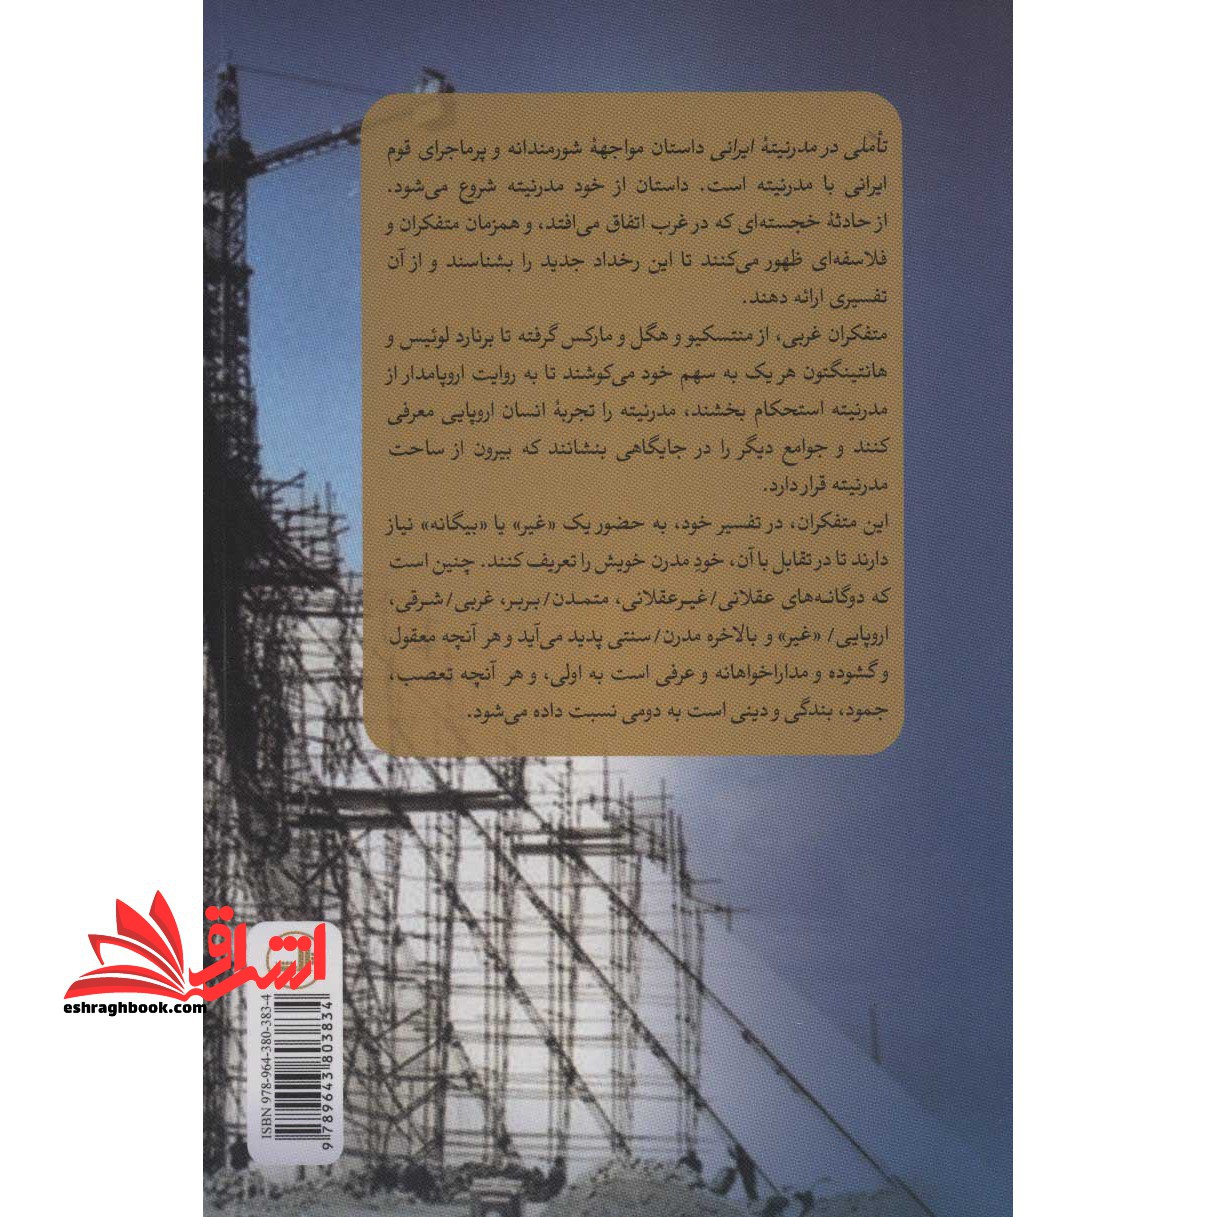 کتاب تاملی در مدرنیته ایرانی - (بحثی درباره گفتمان های روشنفکری و سیاست مدرنیزاسیون در ایران)